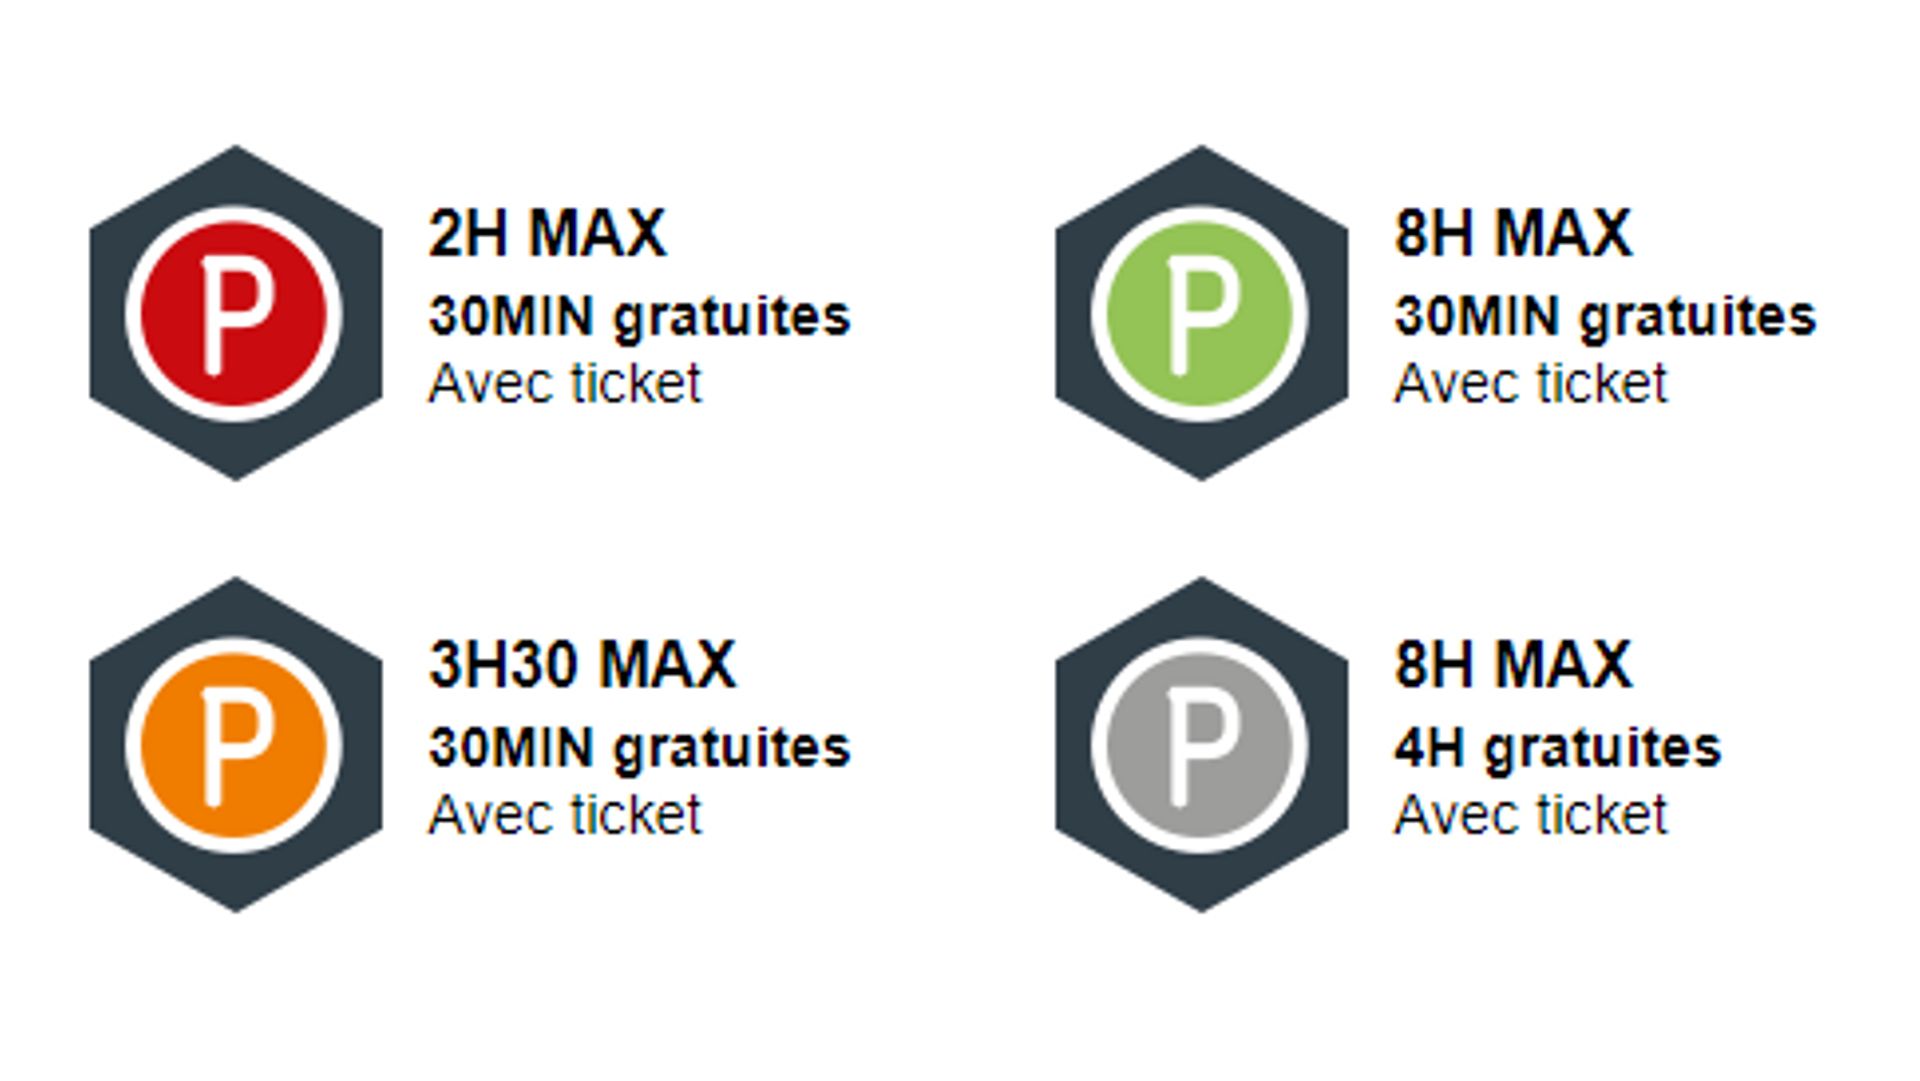 Nouveaux codes couleurs pour le stationnement à Charleroi.